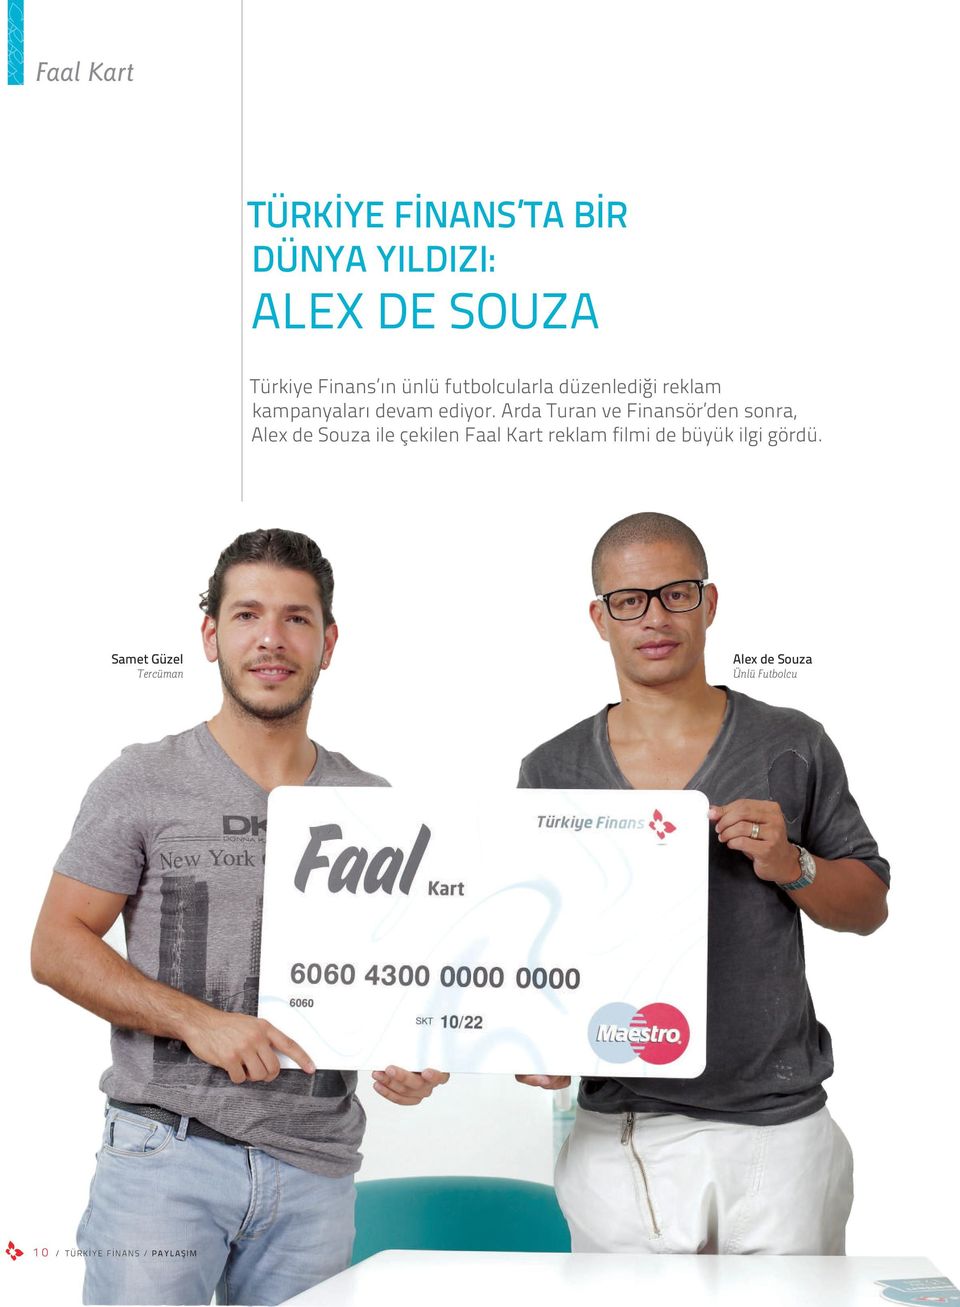 Arda Turan ve Finansör den sonra, Alex de Souza ile çekilen Faal Kart reklam